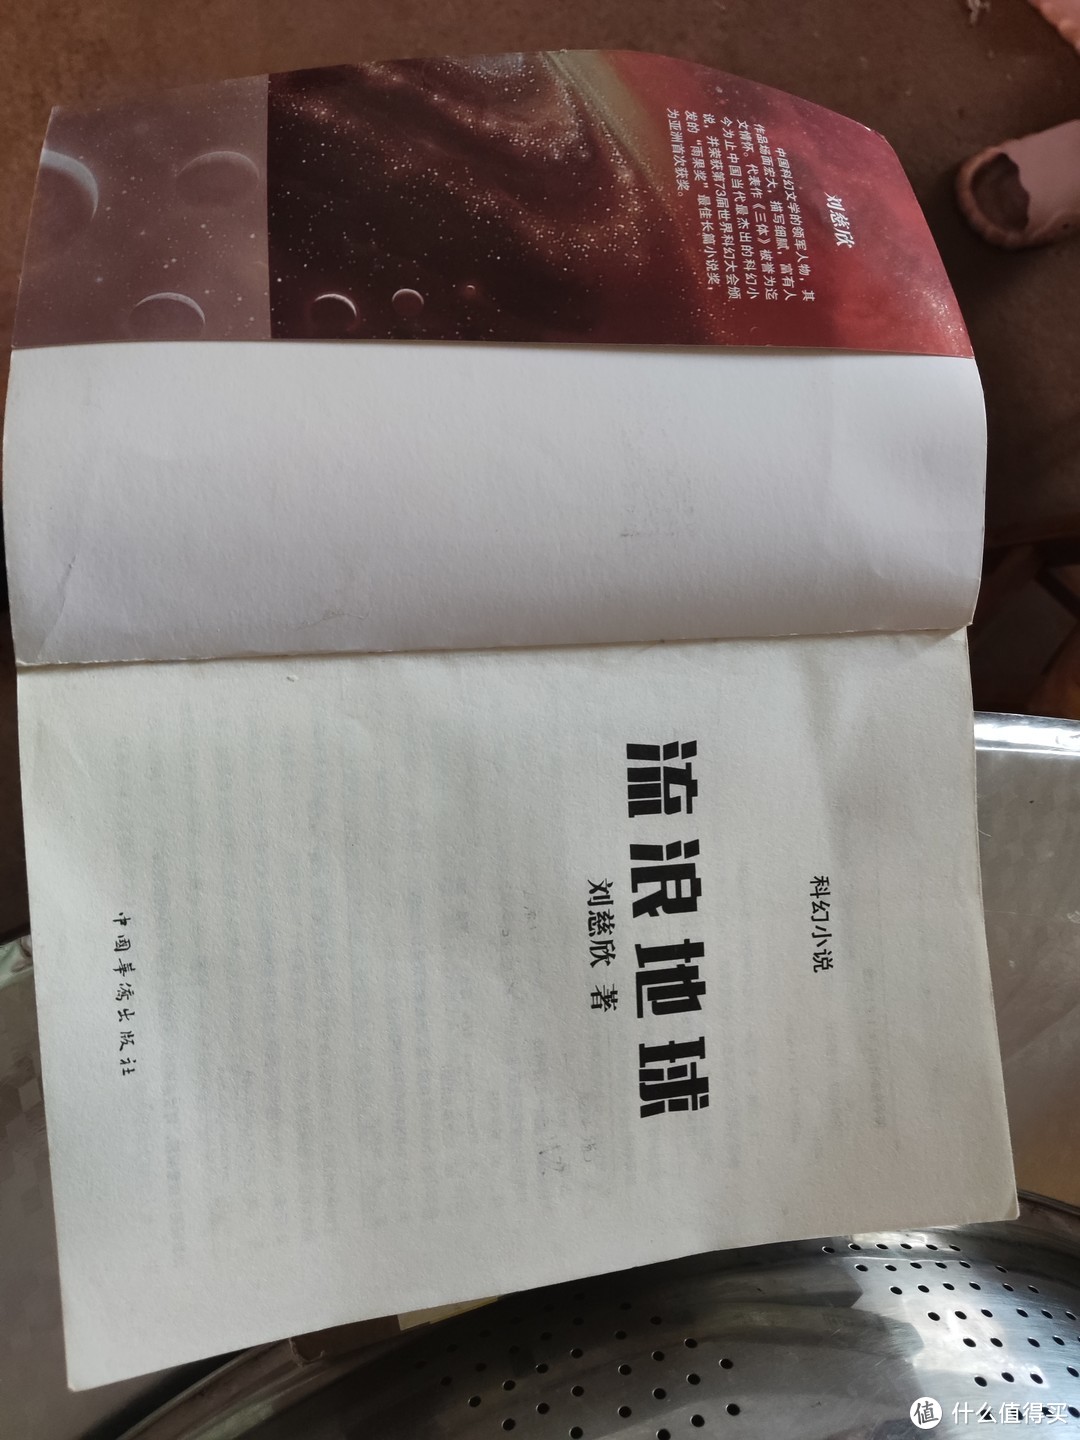 《流浪地球》中国科幻小说巅峰之作